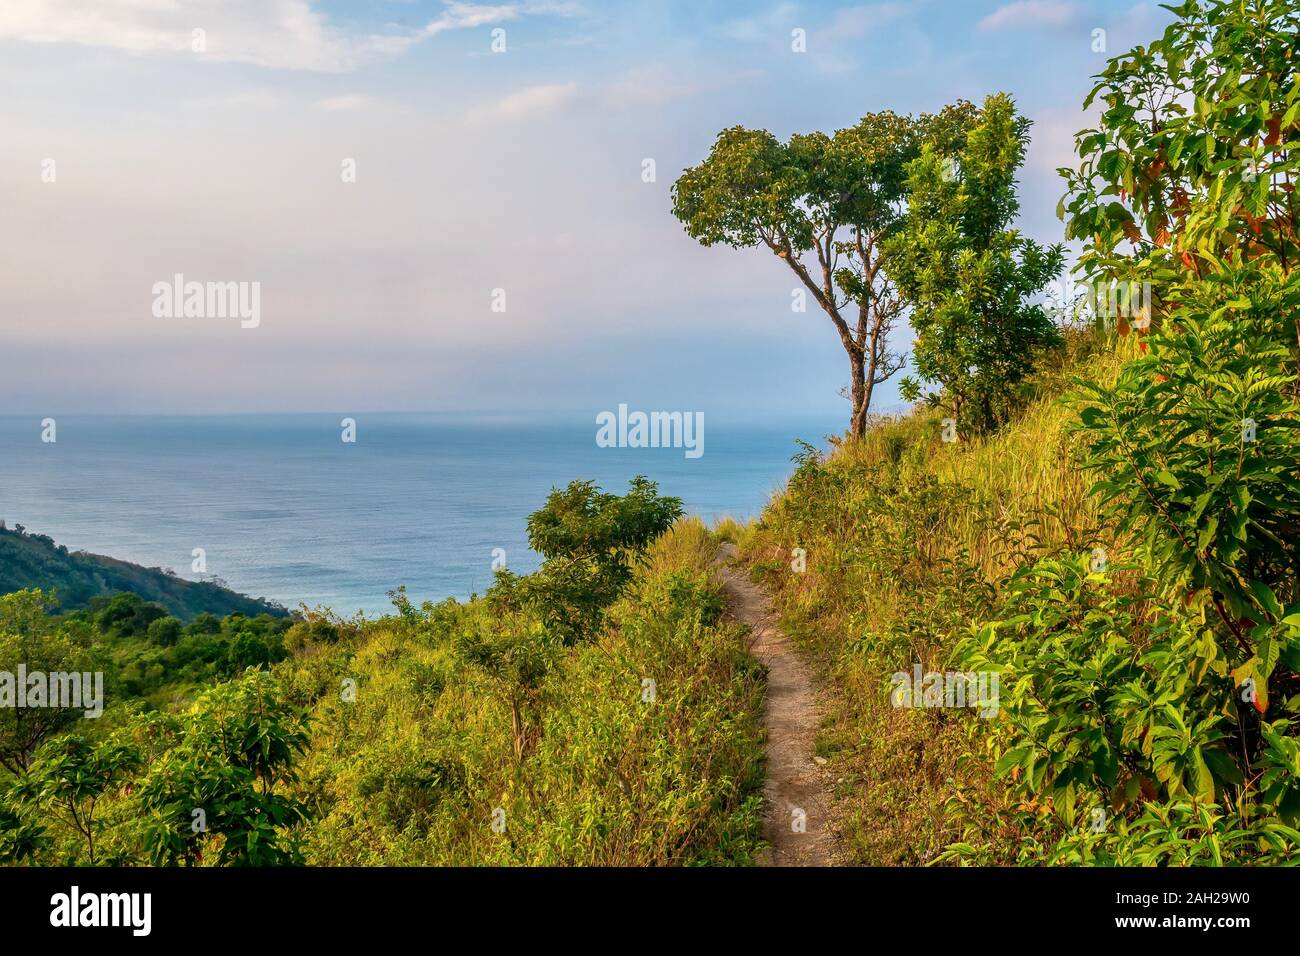 Una natura bellissima scena, con uno stretto sentiero sterrato che conduce ad un unico albero che si affaccia sul mare. Nelle Filippine. Foto Stock